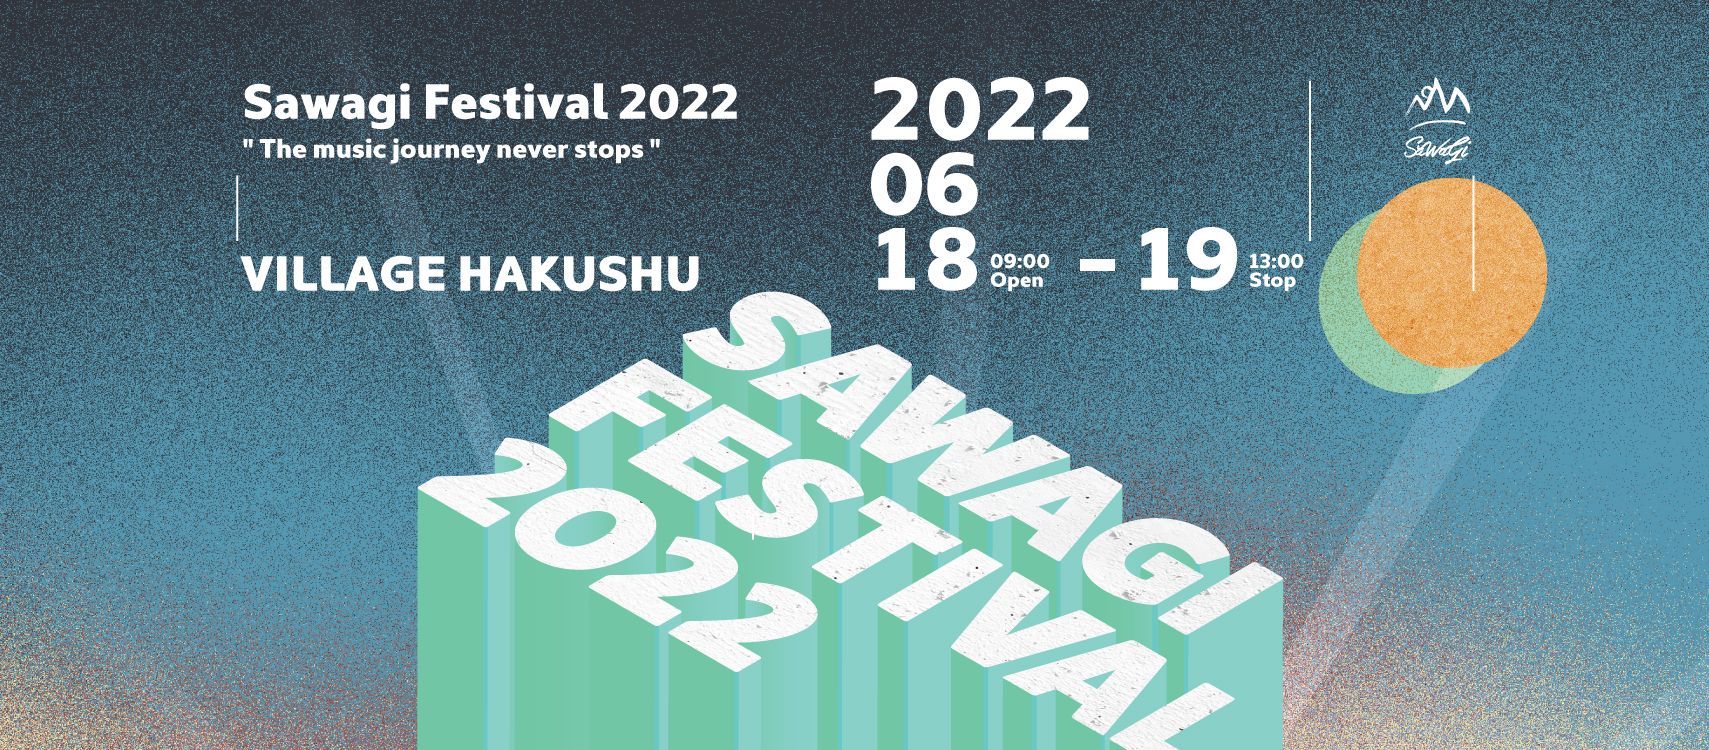 Sawagi Festival 2022